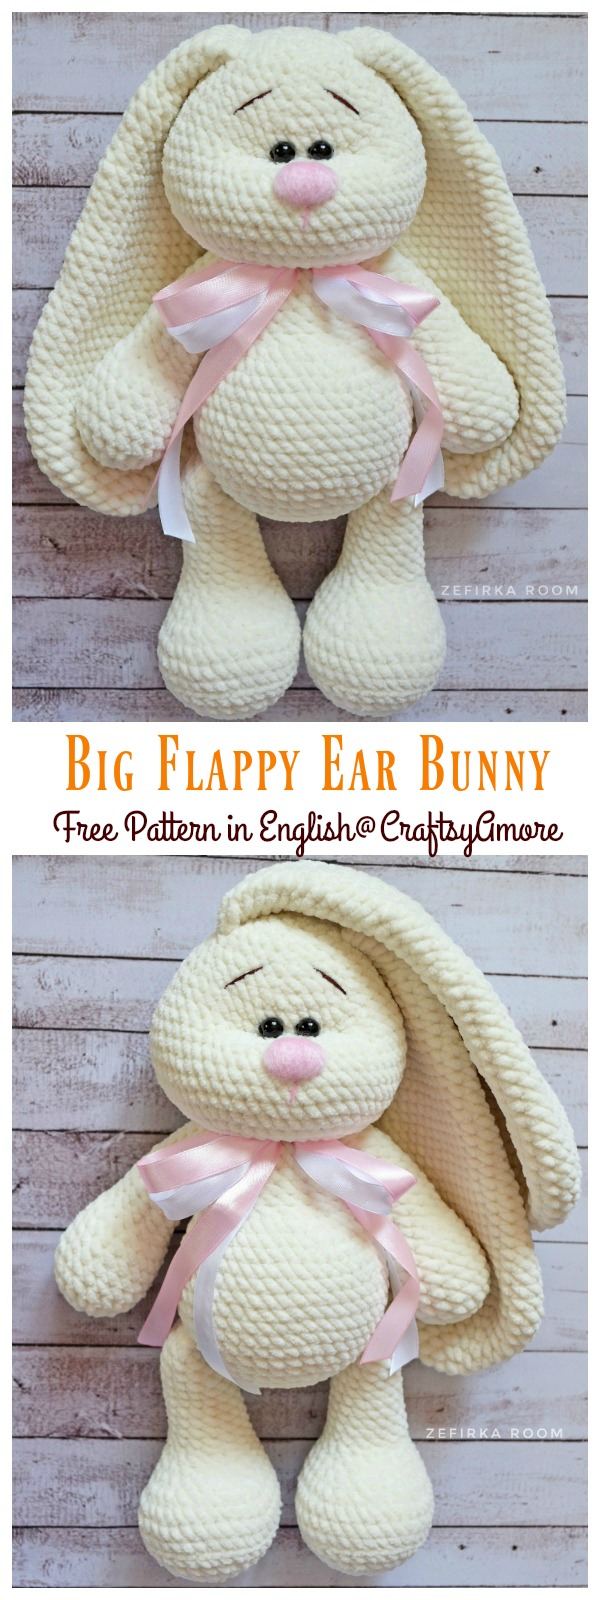 Crochet Big Flappy Ear Bunny Amigurumi Free Pattern 